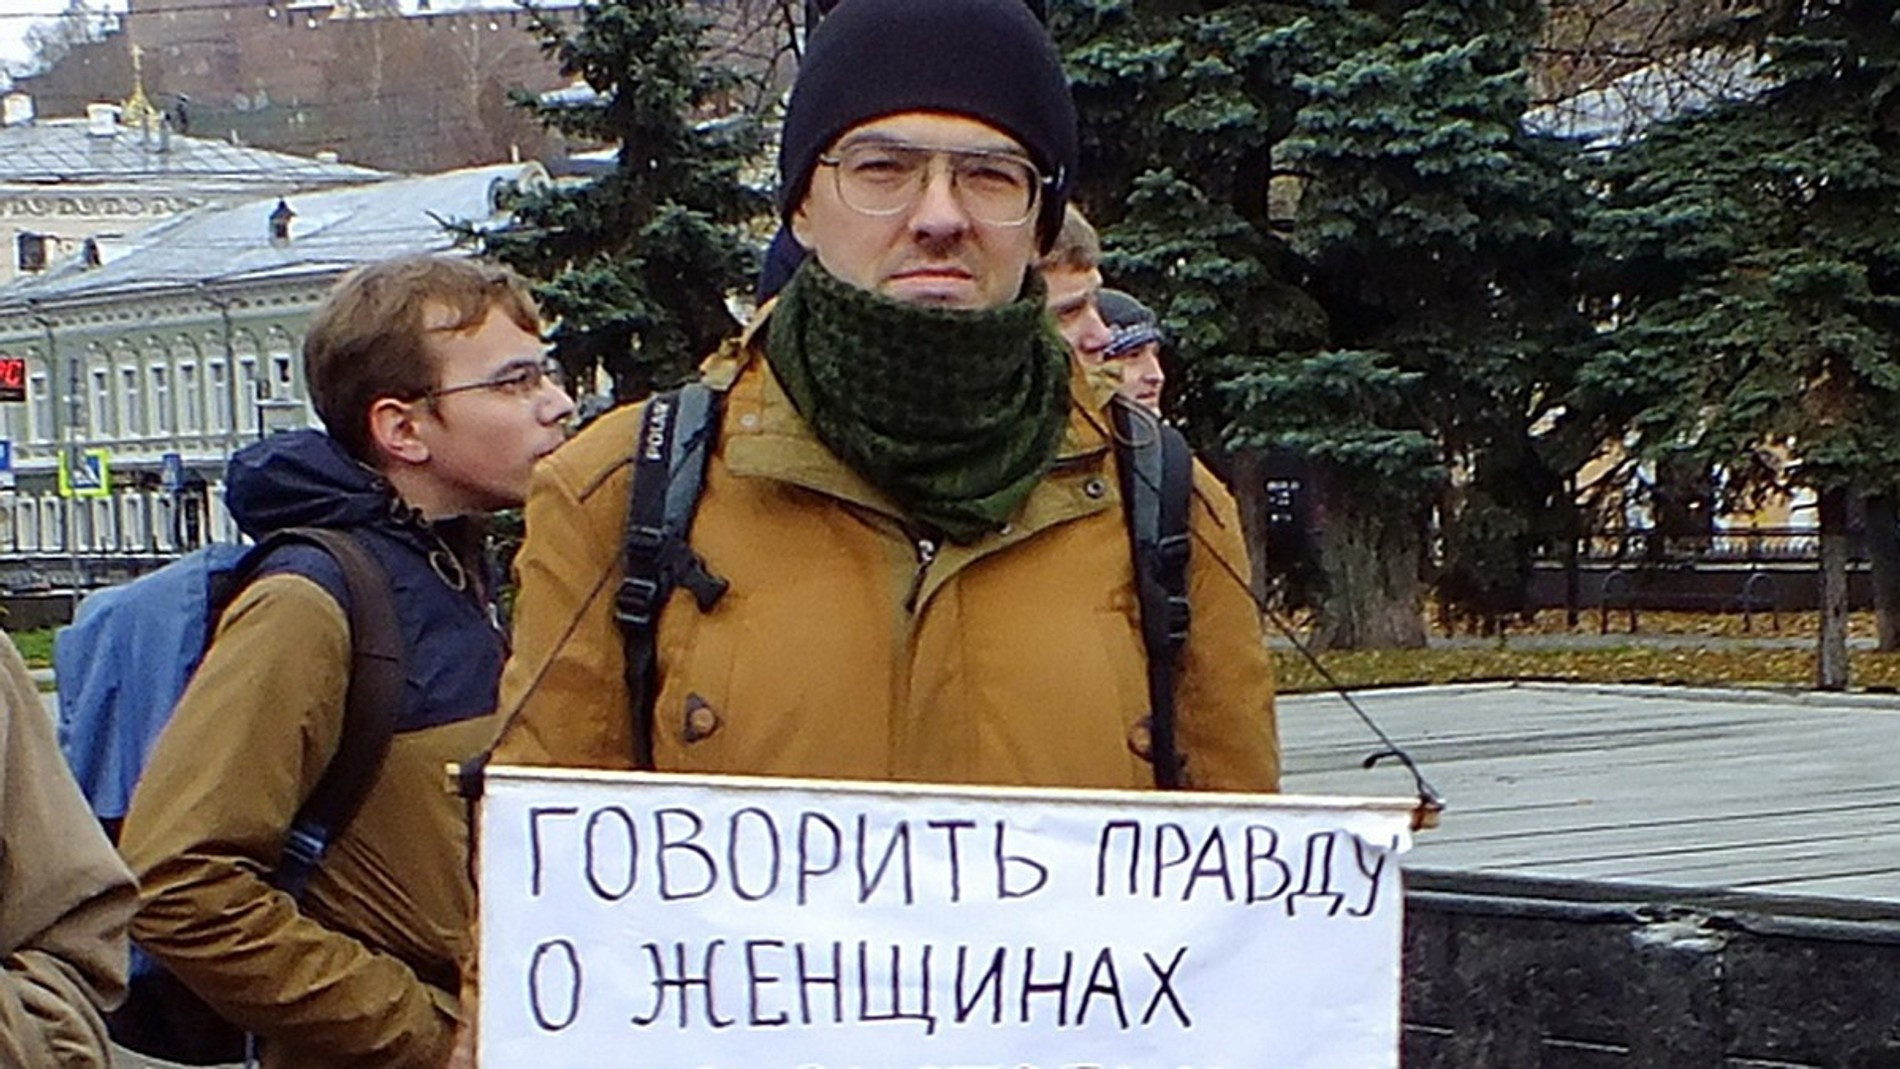 Алексей Поднебесный на одном из митингов. Источник: соцсети Алексея Поднебесного